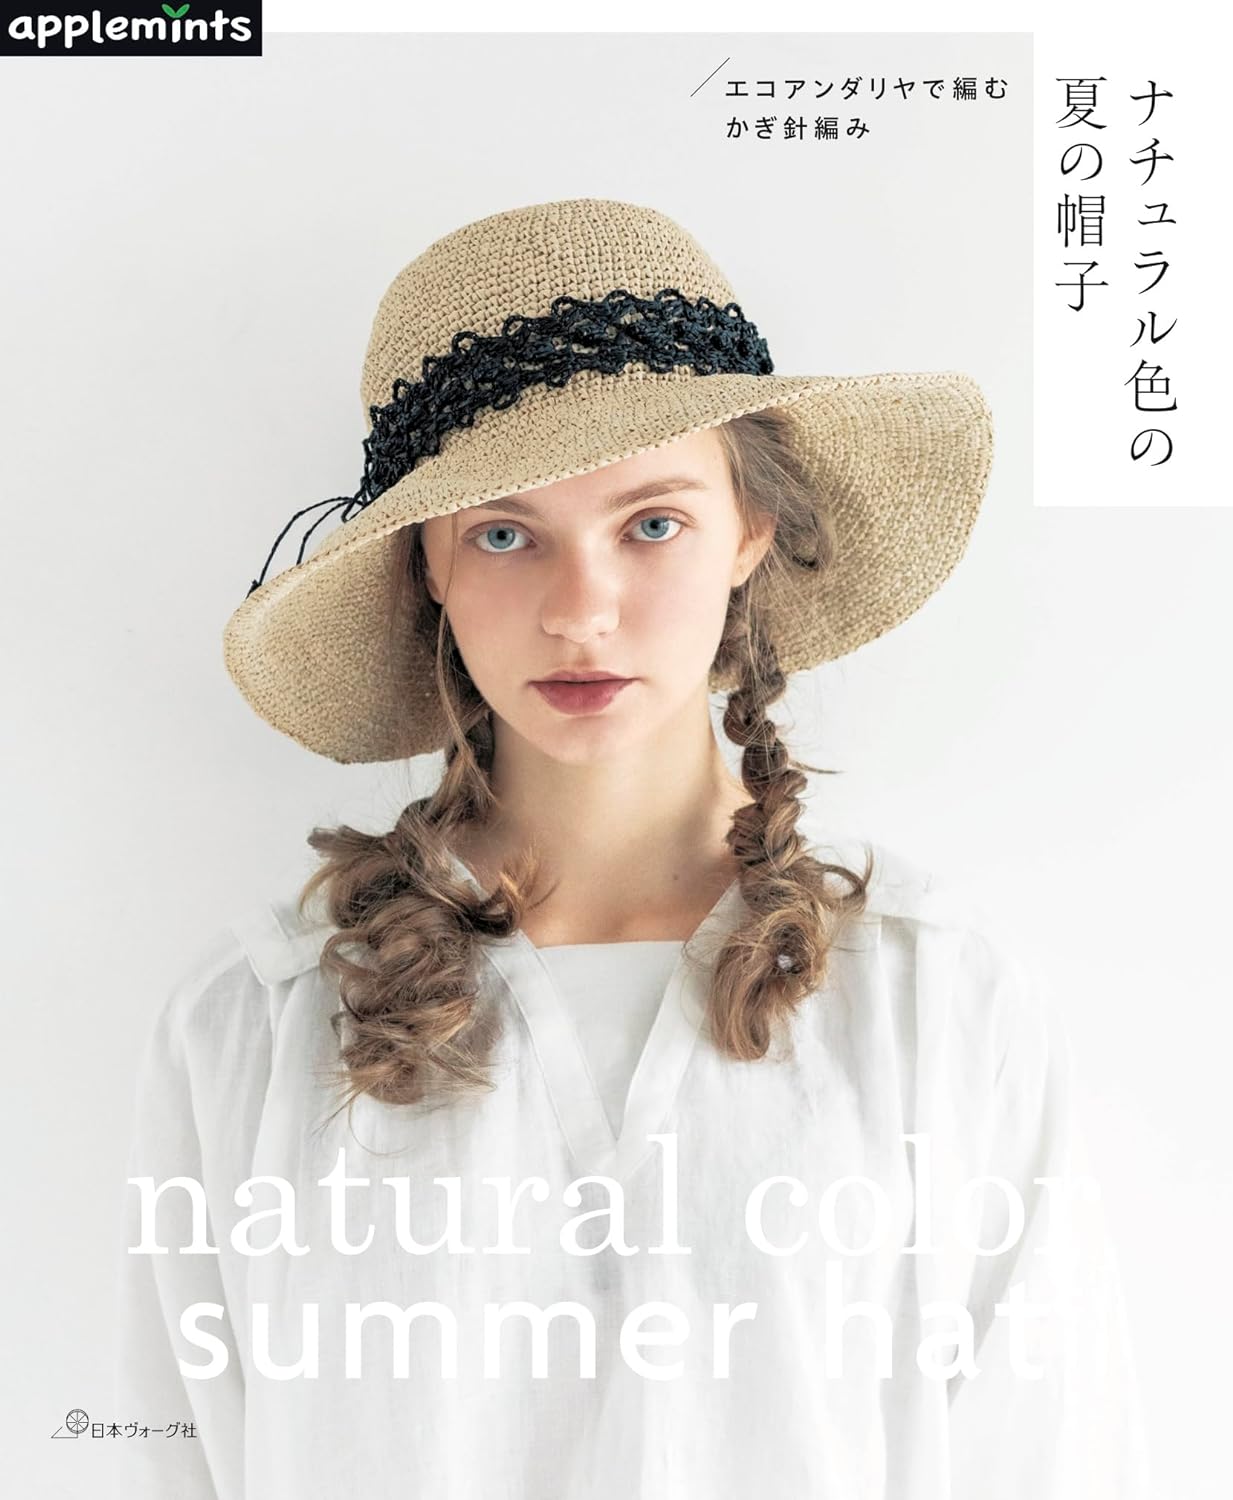 NV72193 ナチュラル色の夏の帽子/日本ヴォーグ社(冊)